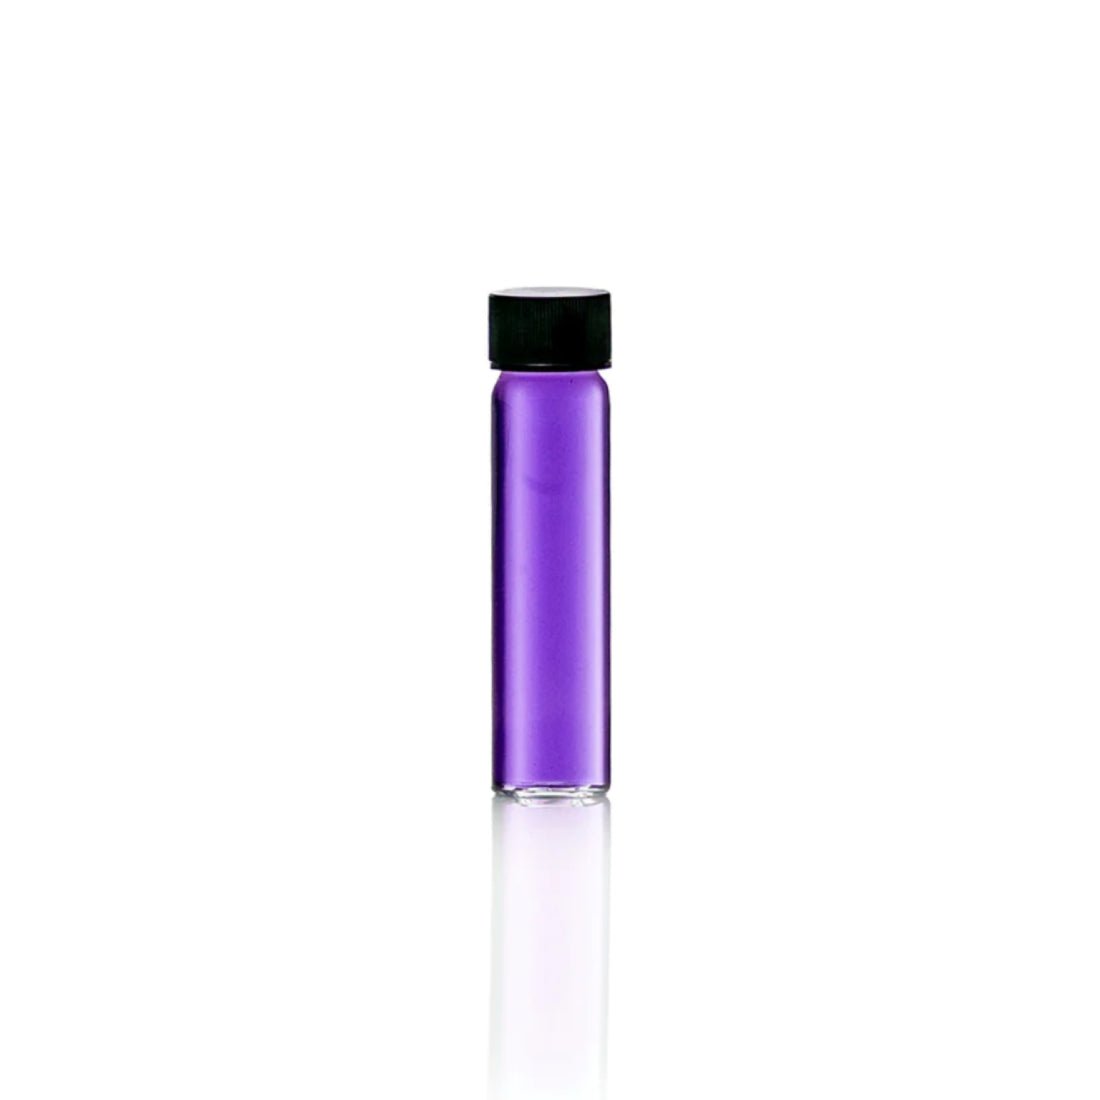 Go Chiller Astro D-Series Cooling Liquid - Violet - سائل تبريد - Store 974 | ستور ٩٧٤